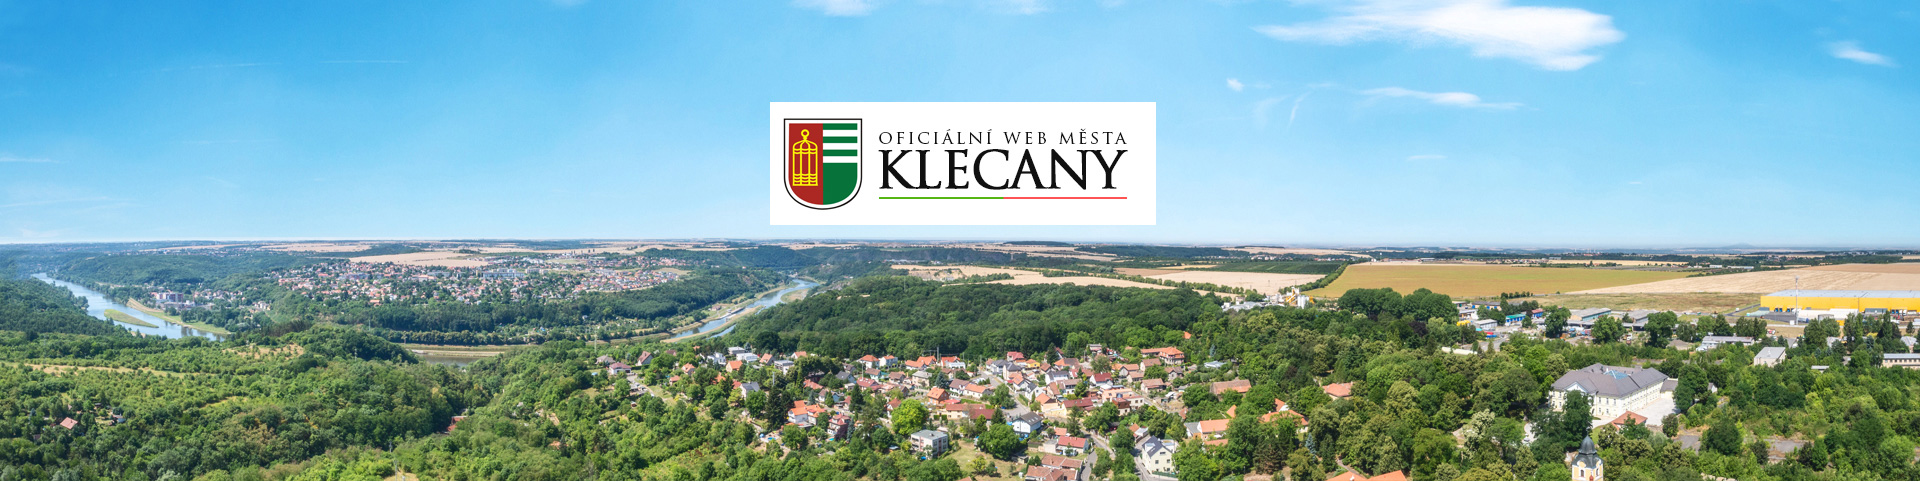 Město Klecany - Městský úřad Klecany - oficiální web města